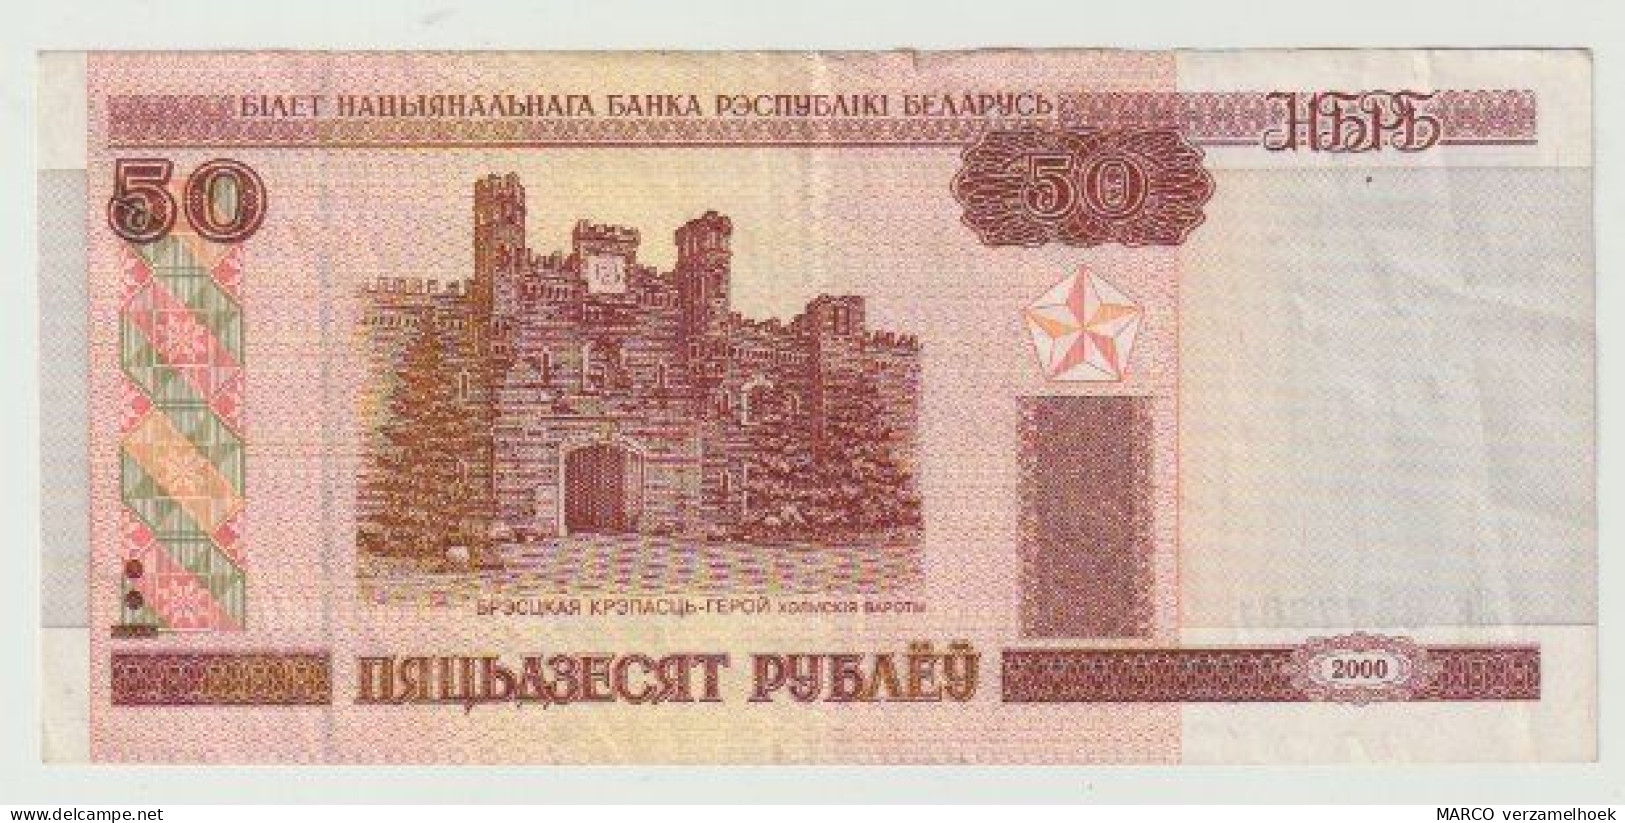 Used Banknote Wit-rusland Belarus 50 Rublei 2000 - Belarus